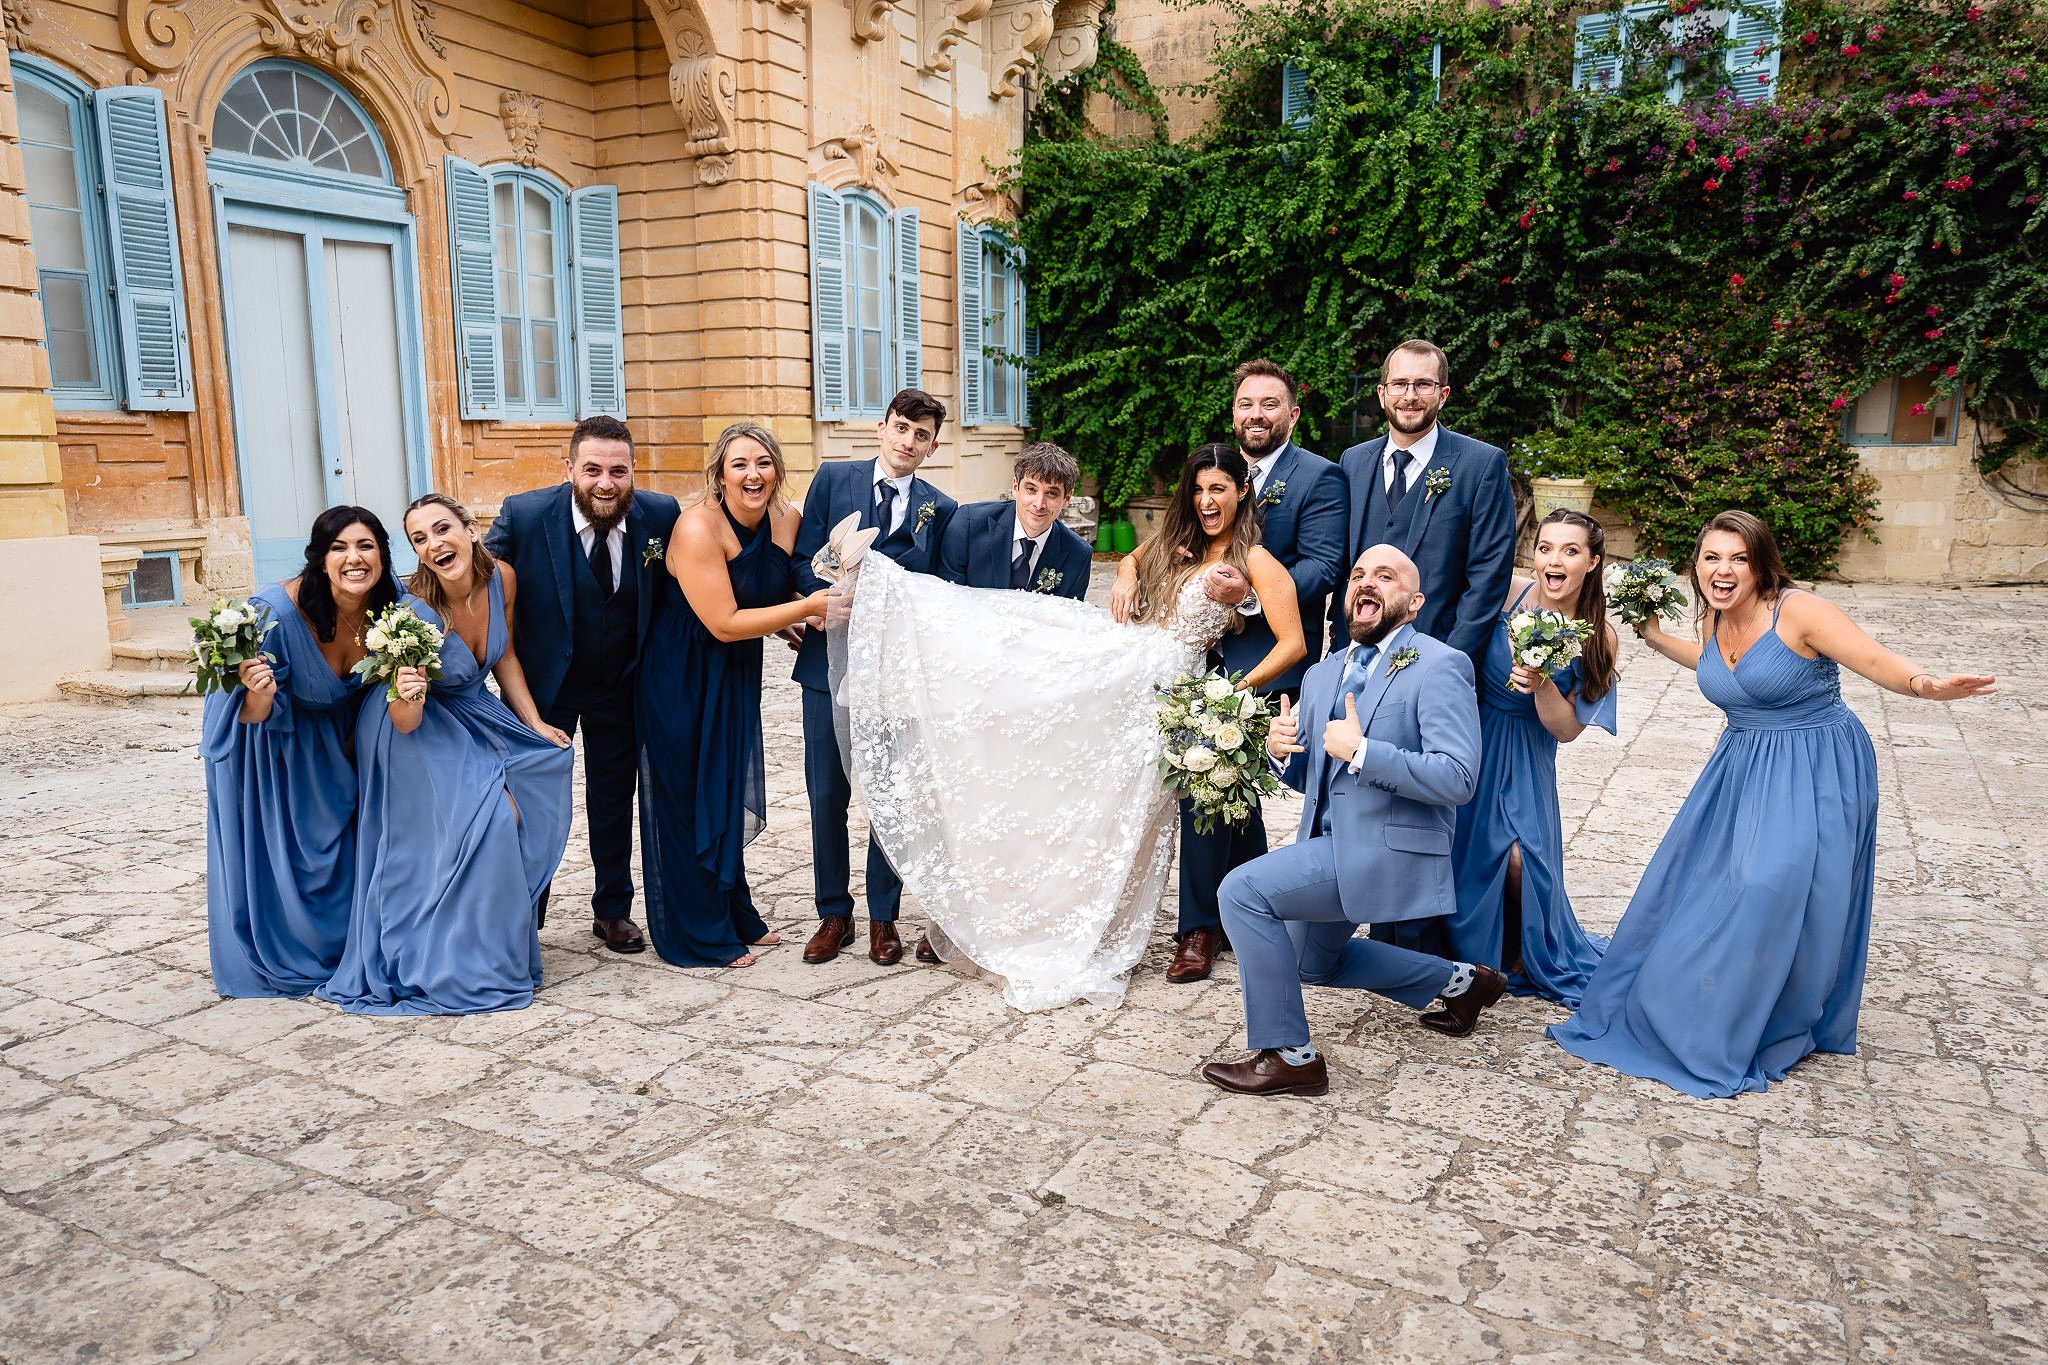 Debbie & Phil's Wedding at Villa Bologna_0064.jpg